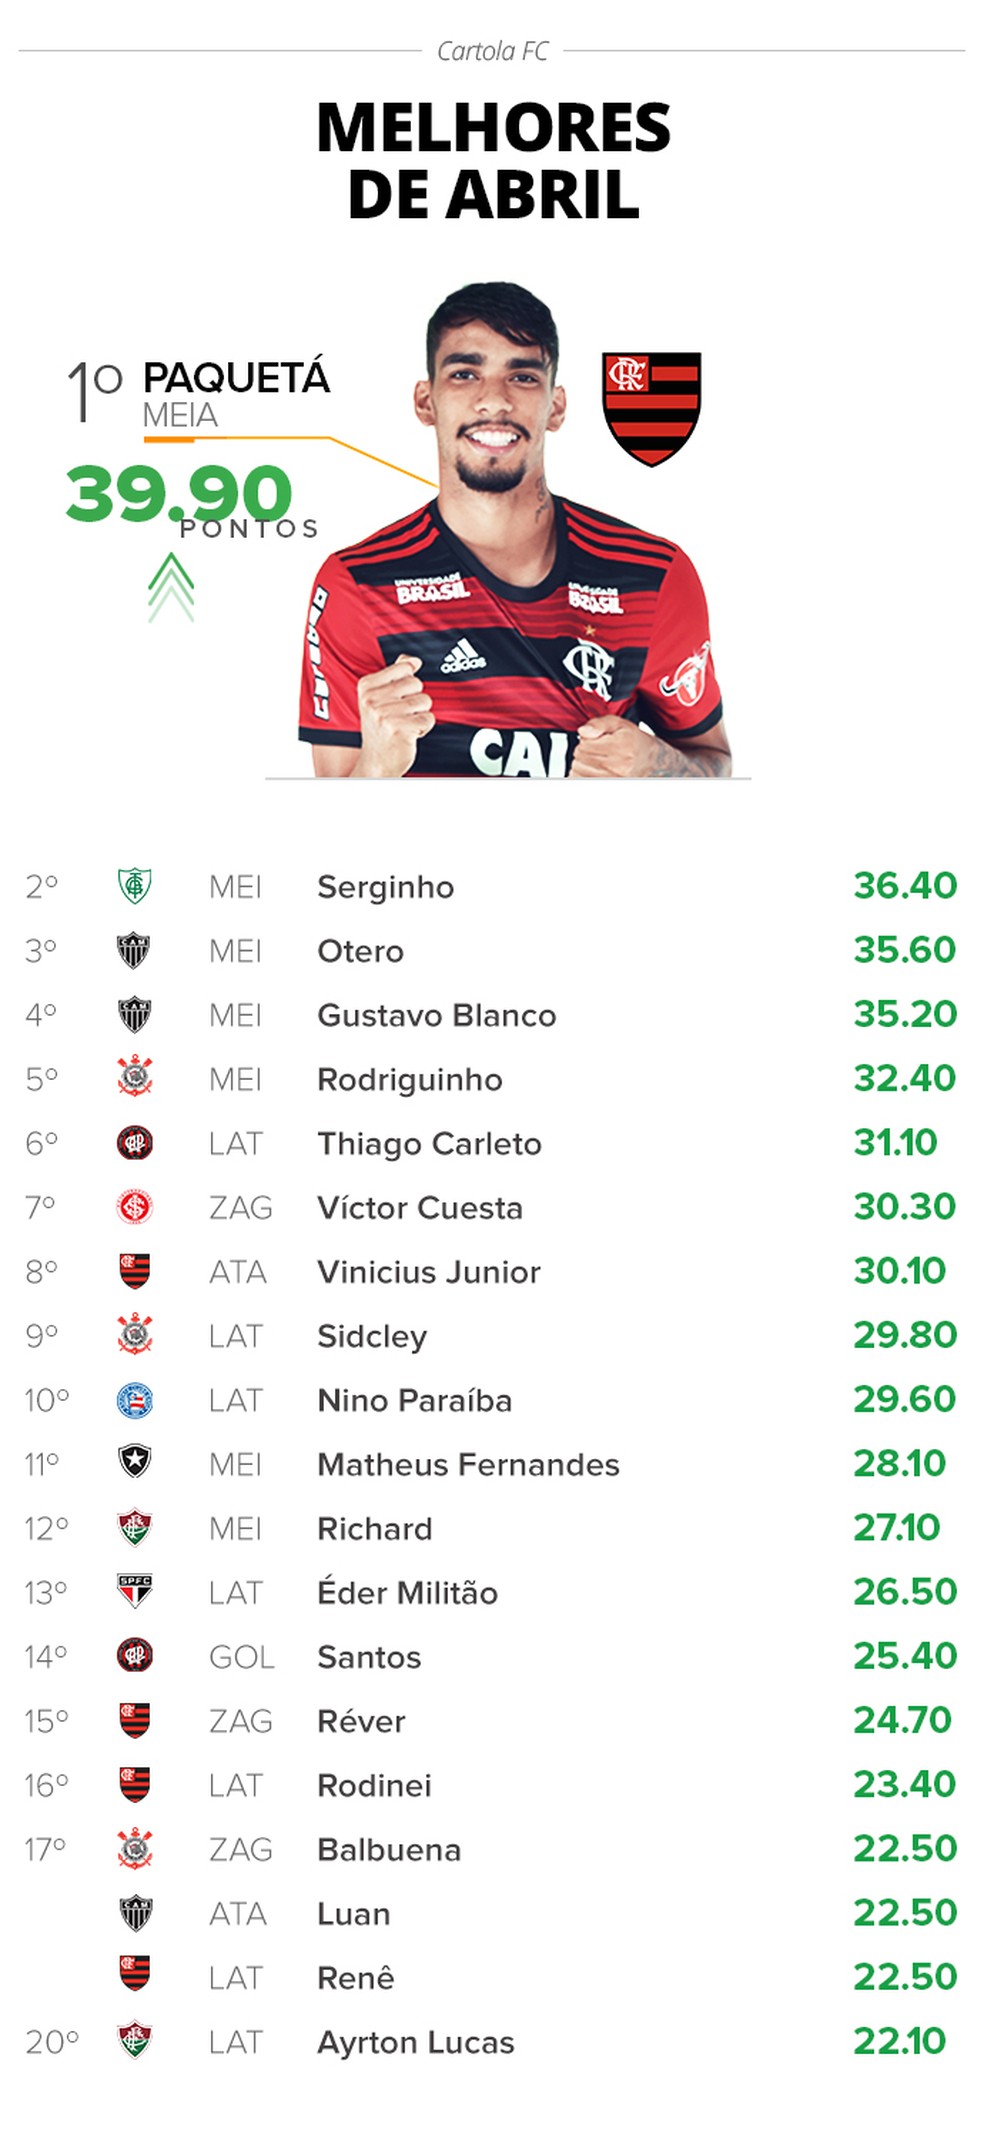 Flamengo domina lista com 5 dos 20 maiores pontuadores do Cartola em abril (Foto: Infografia)